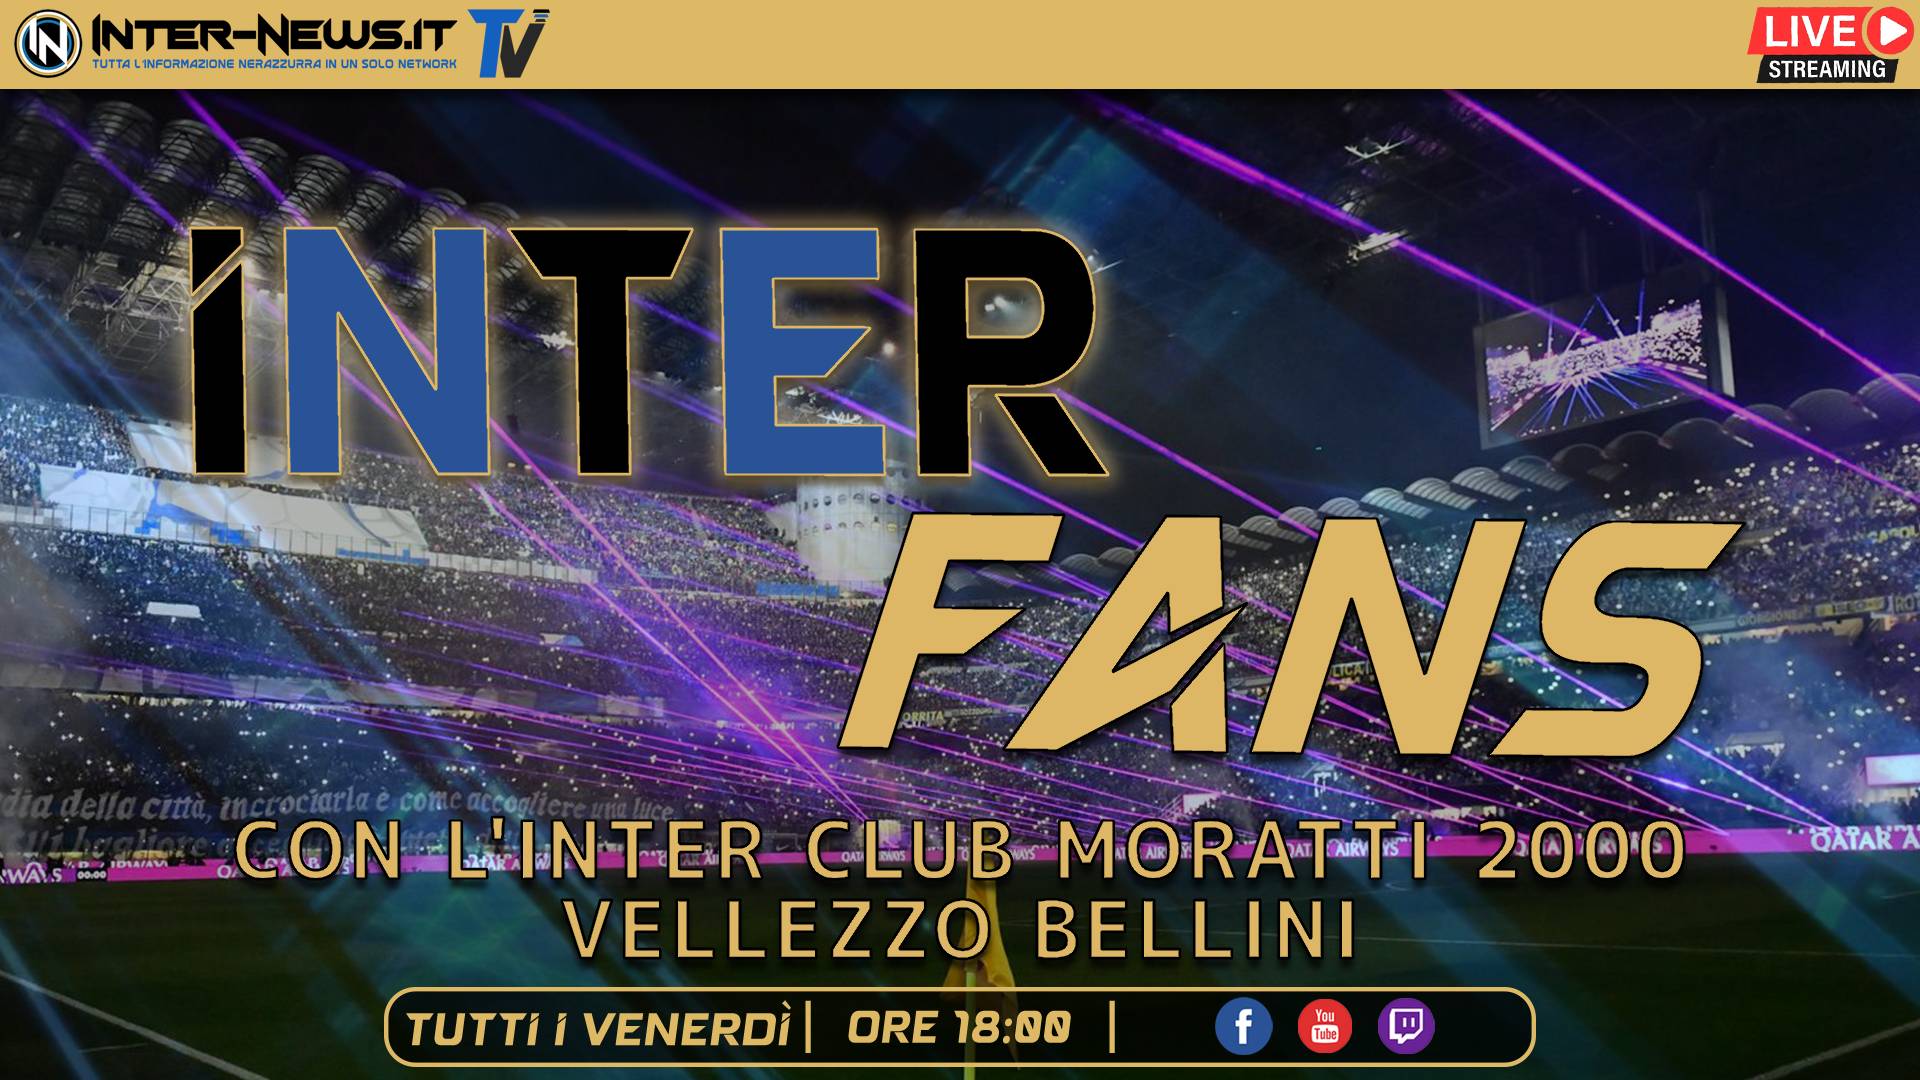 Inter Fans, in diretta con i tifosi dell’Inter Club ‘Moratti 2000’ | Inter News TV LIVE